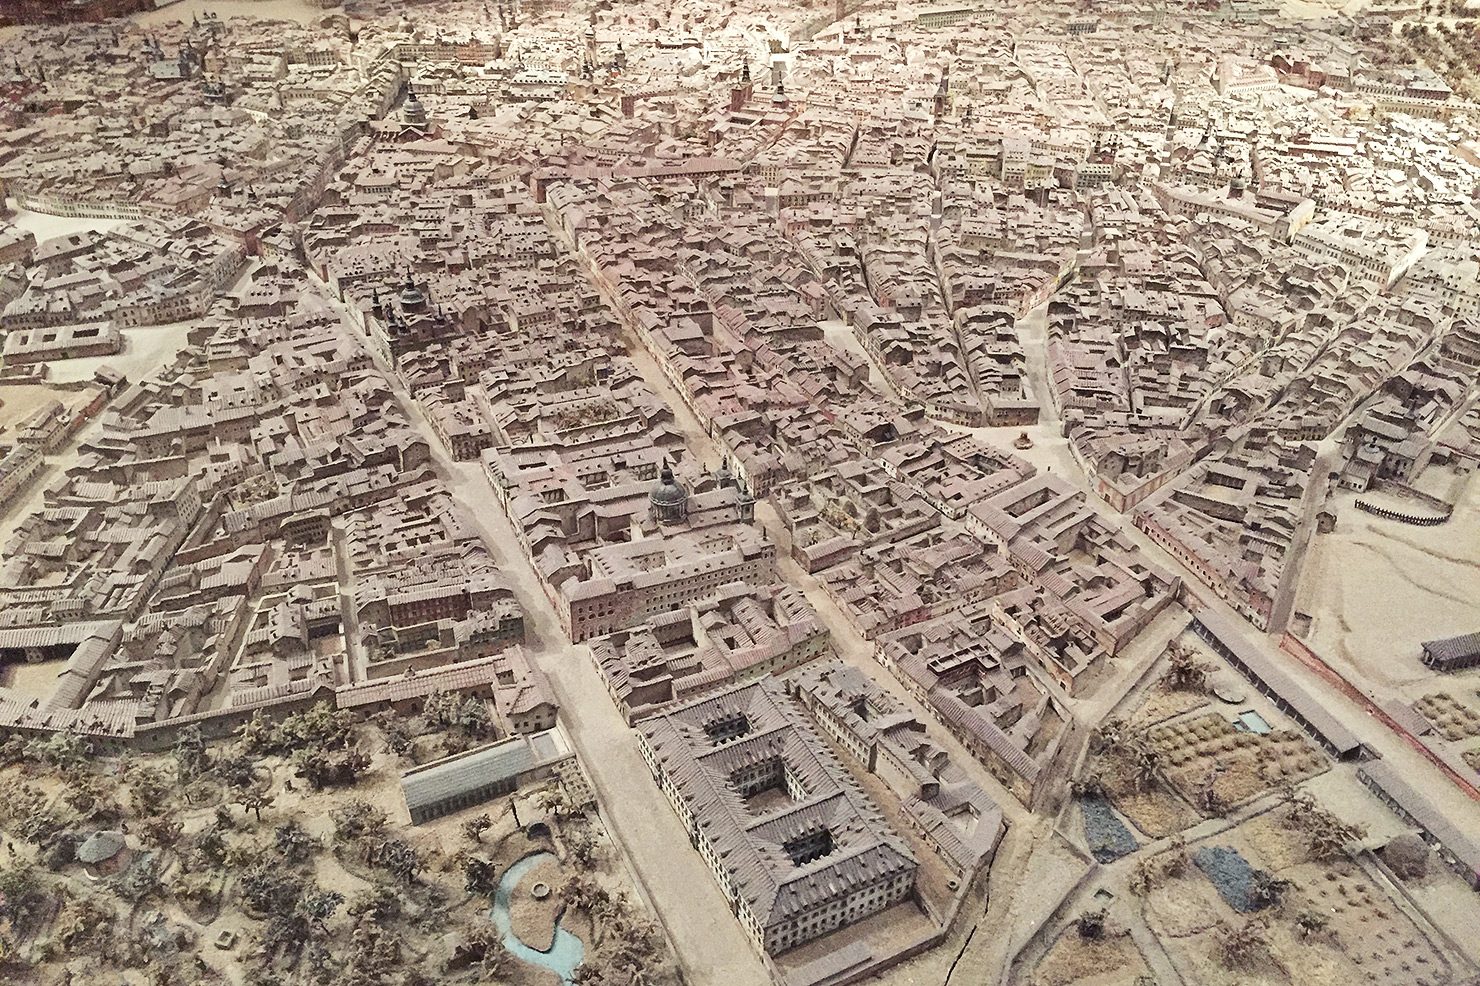 A model of central Madrid, built in 1830 by León Gil de Palacio.